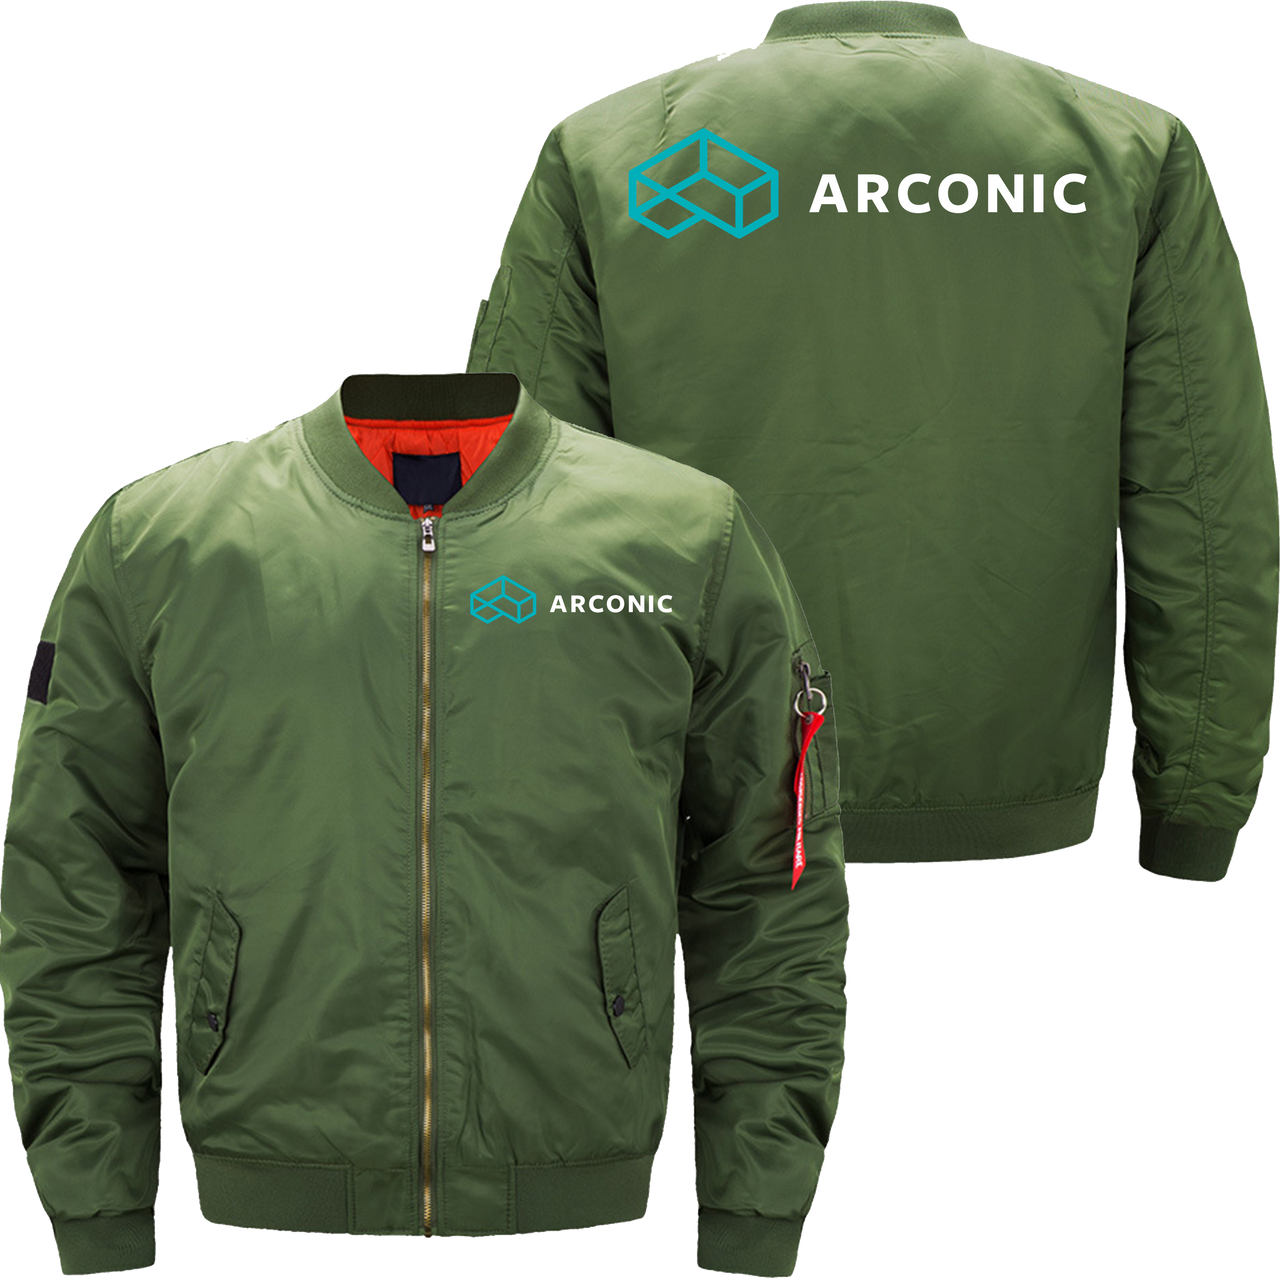 Aronic Jacket